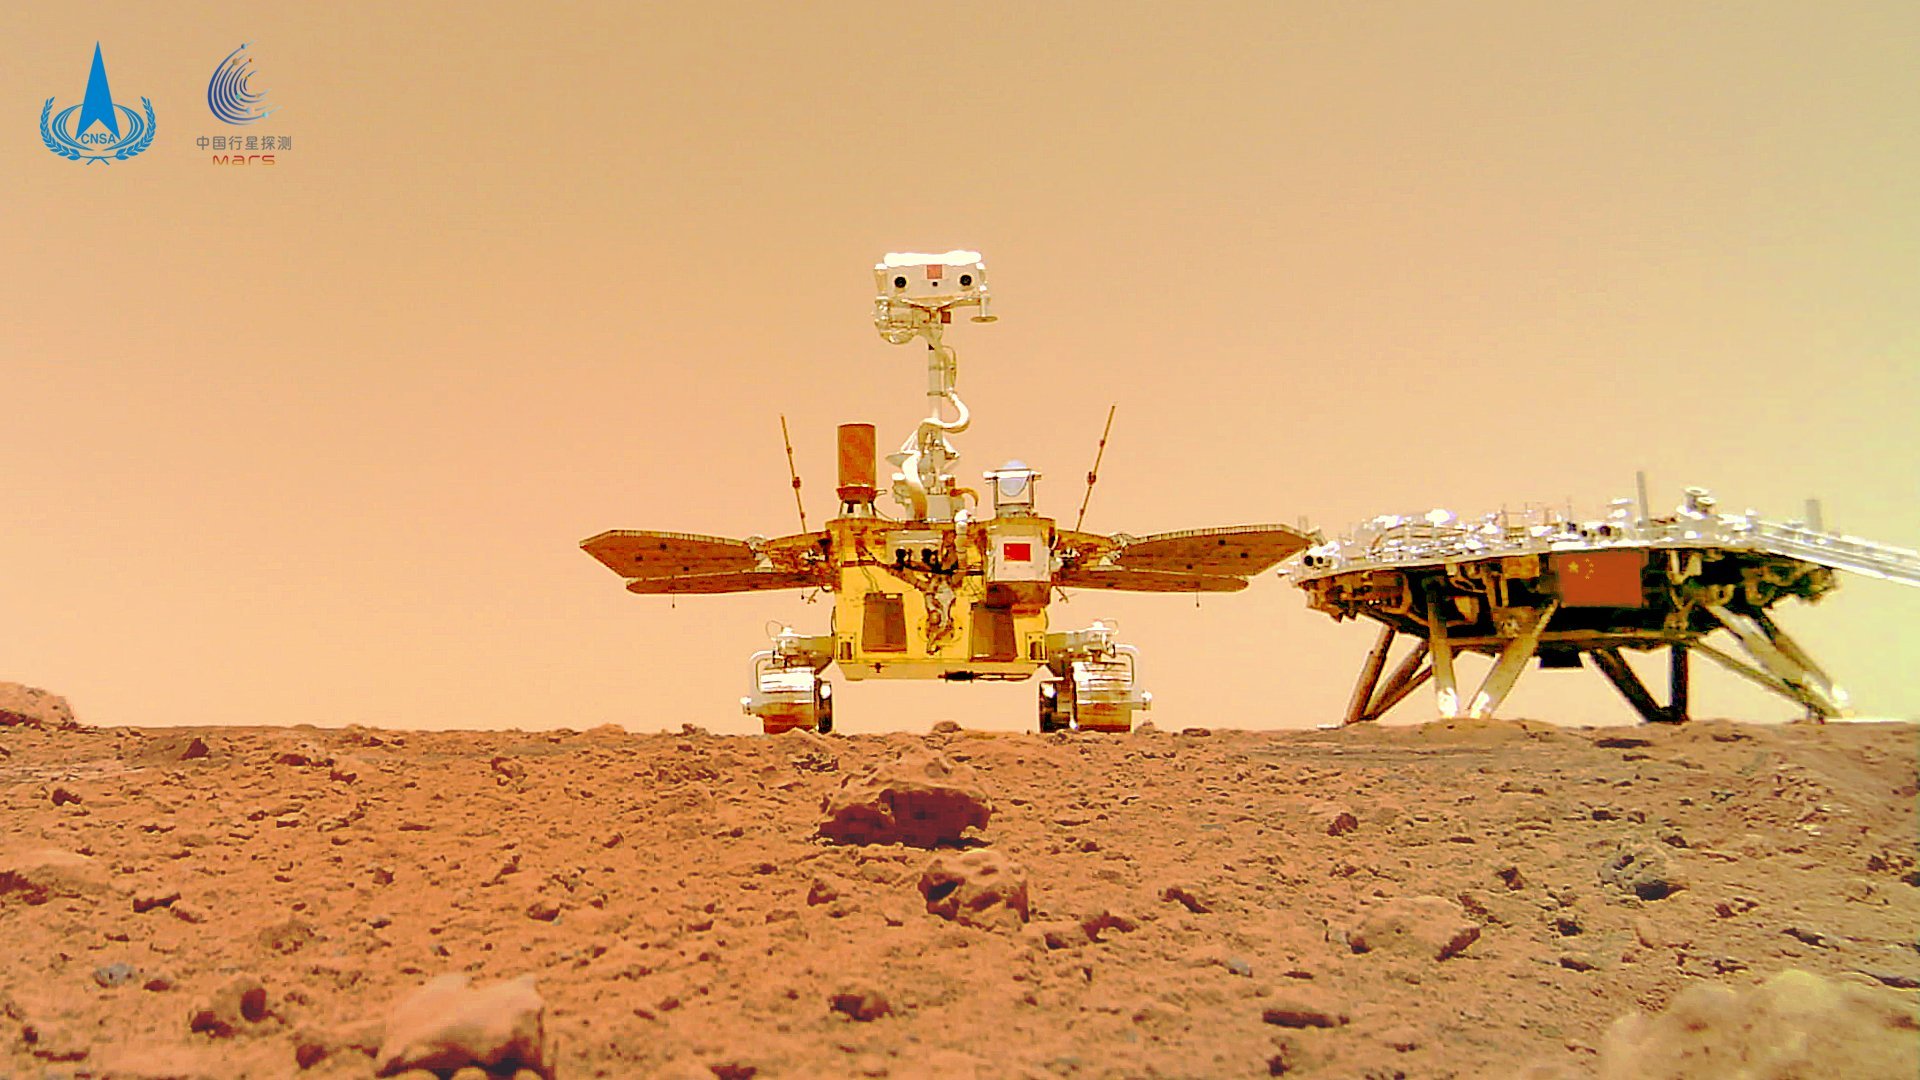 On se souvient de ce magnifique selfie fait par le rover chinois une fois posé sur Mars ! © CNSA